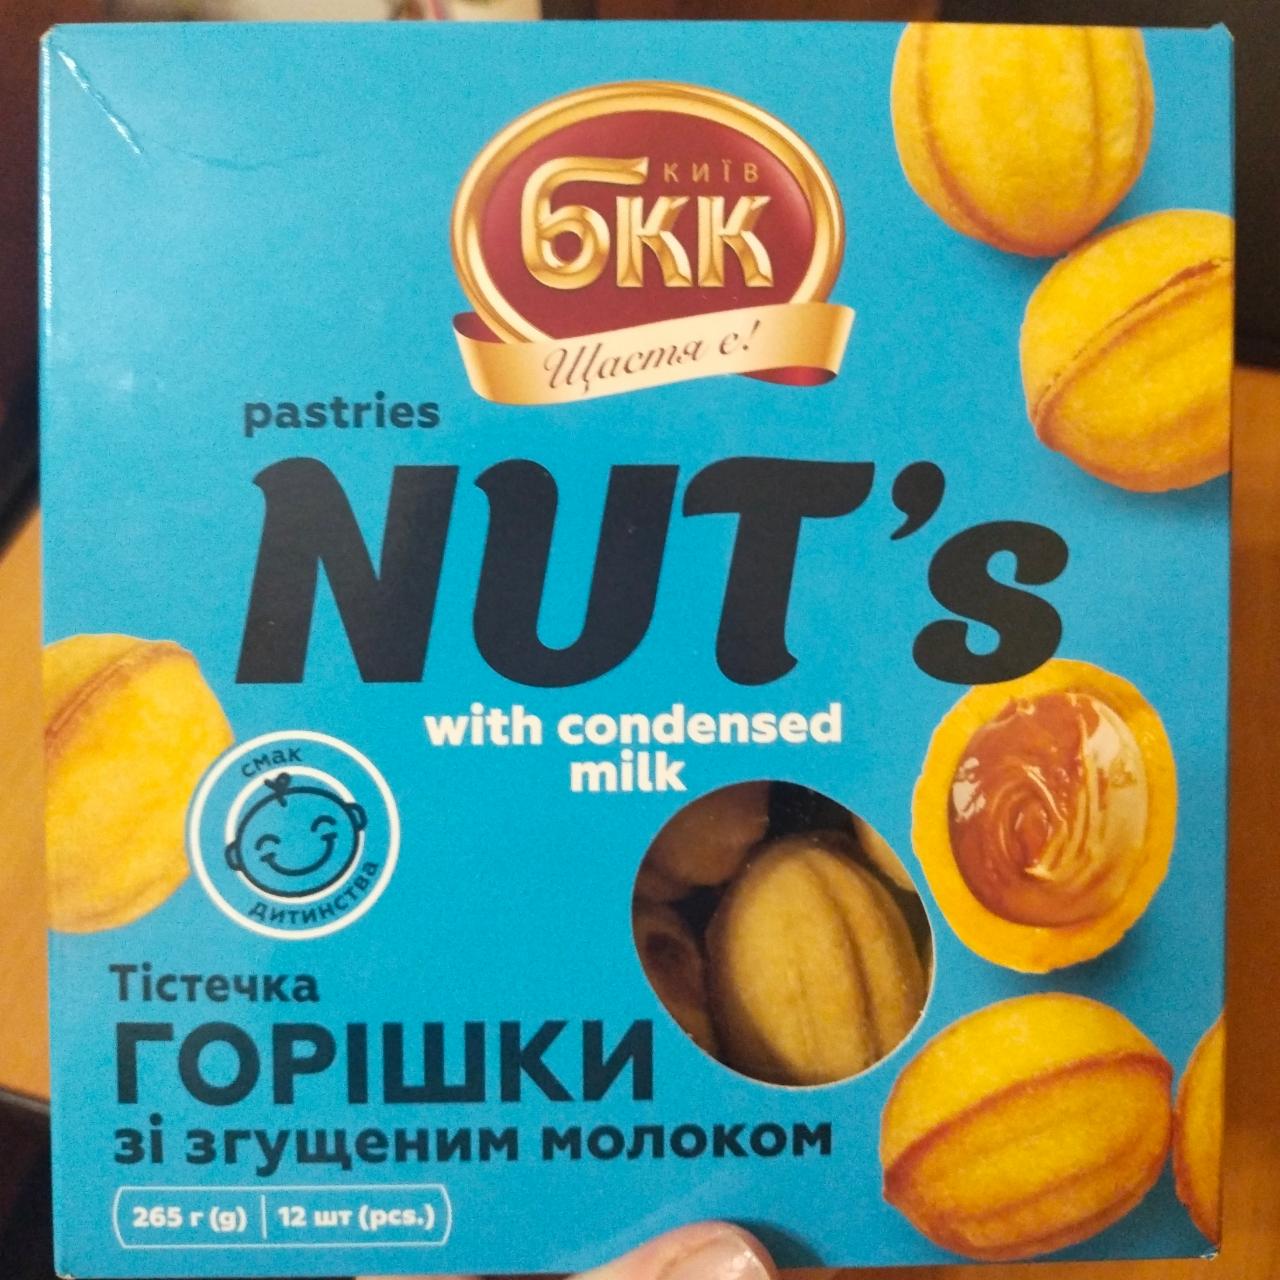 Фото - Пирожные Орешки со згущеным молоком Київ БКК